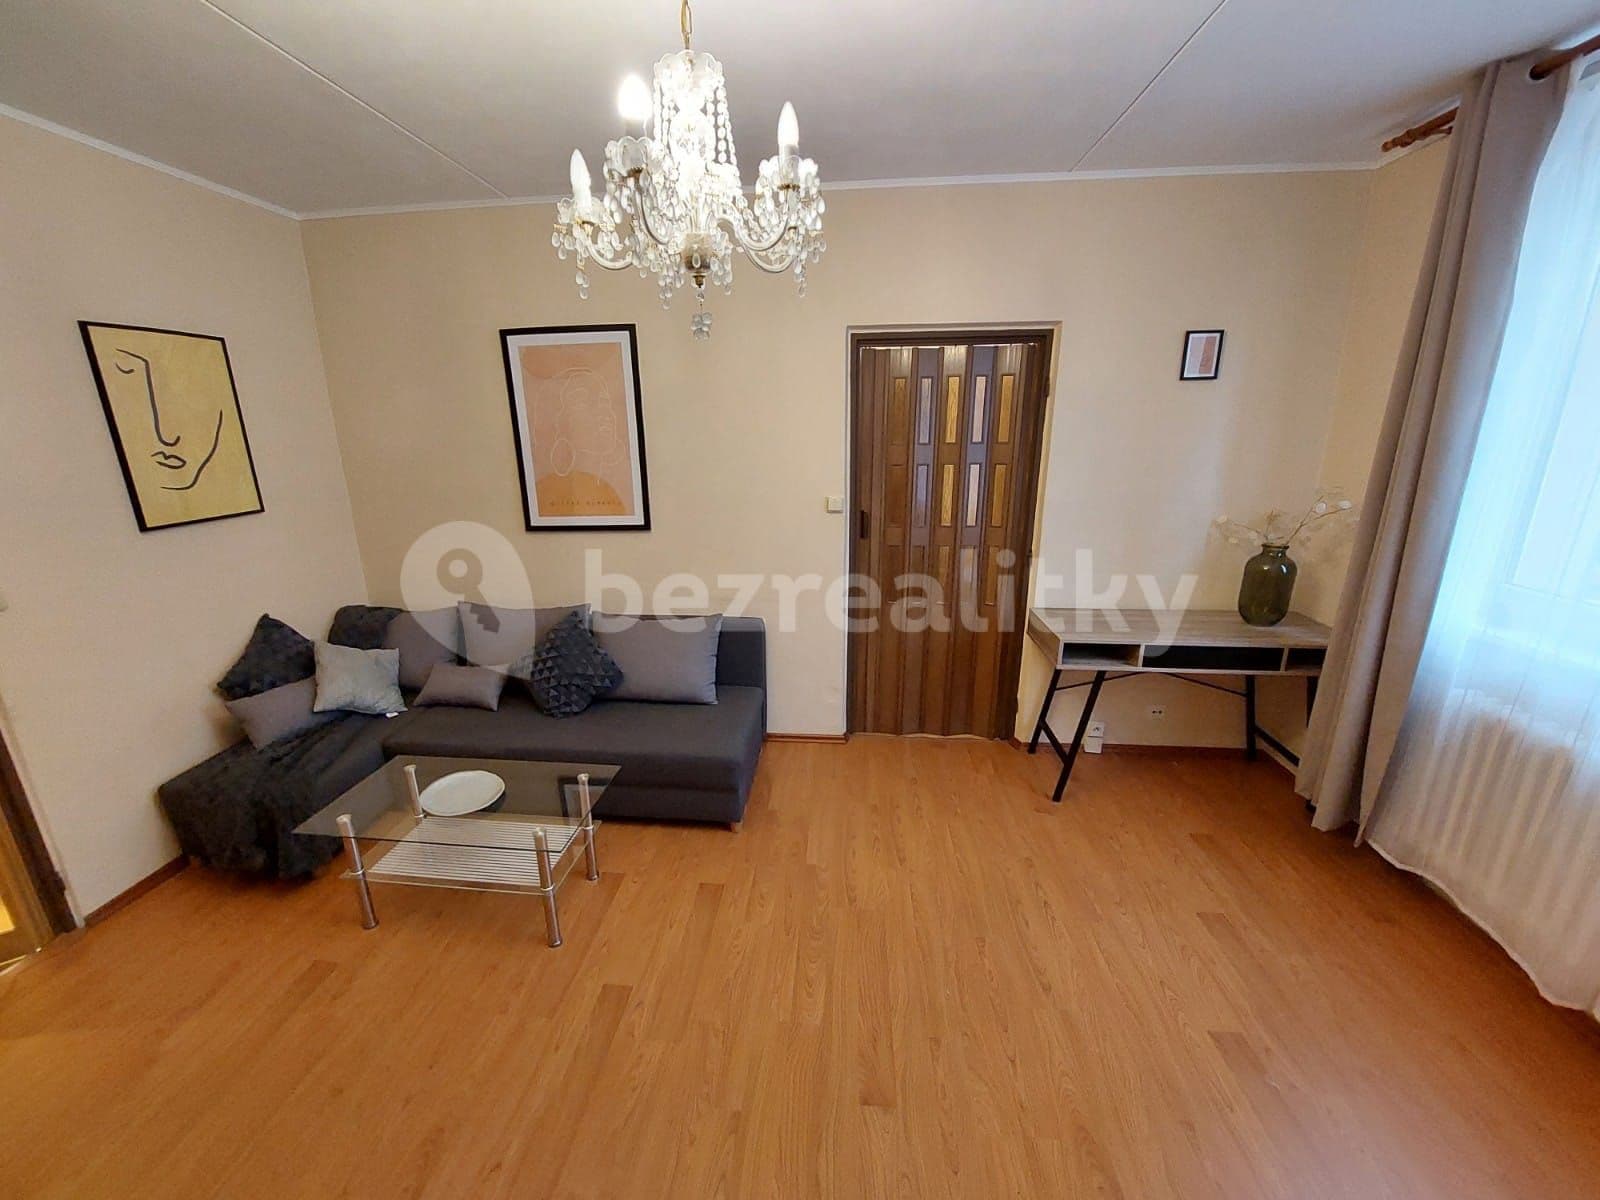 3 bedroom flat for sale, 76 m², Prague, Prague